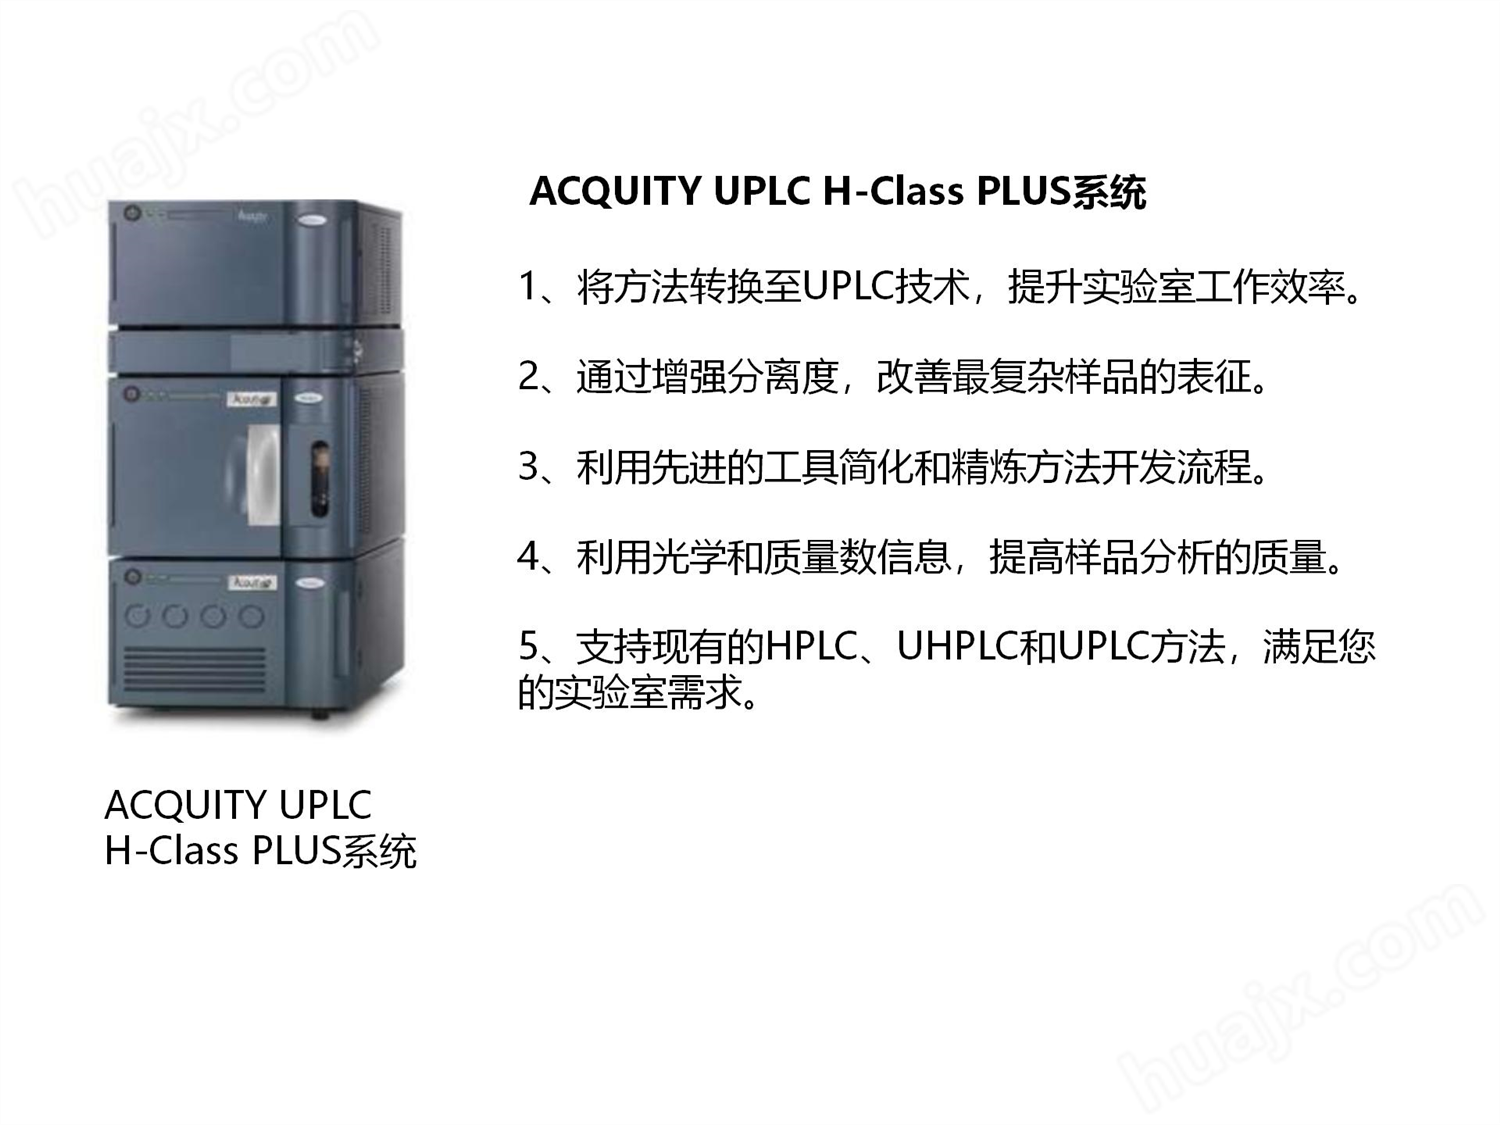 ACQUITY UPLC H-Class PLUS系统